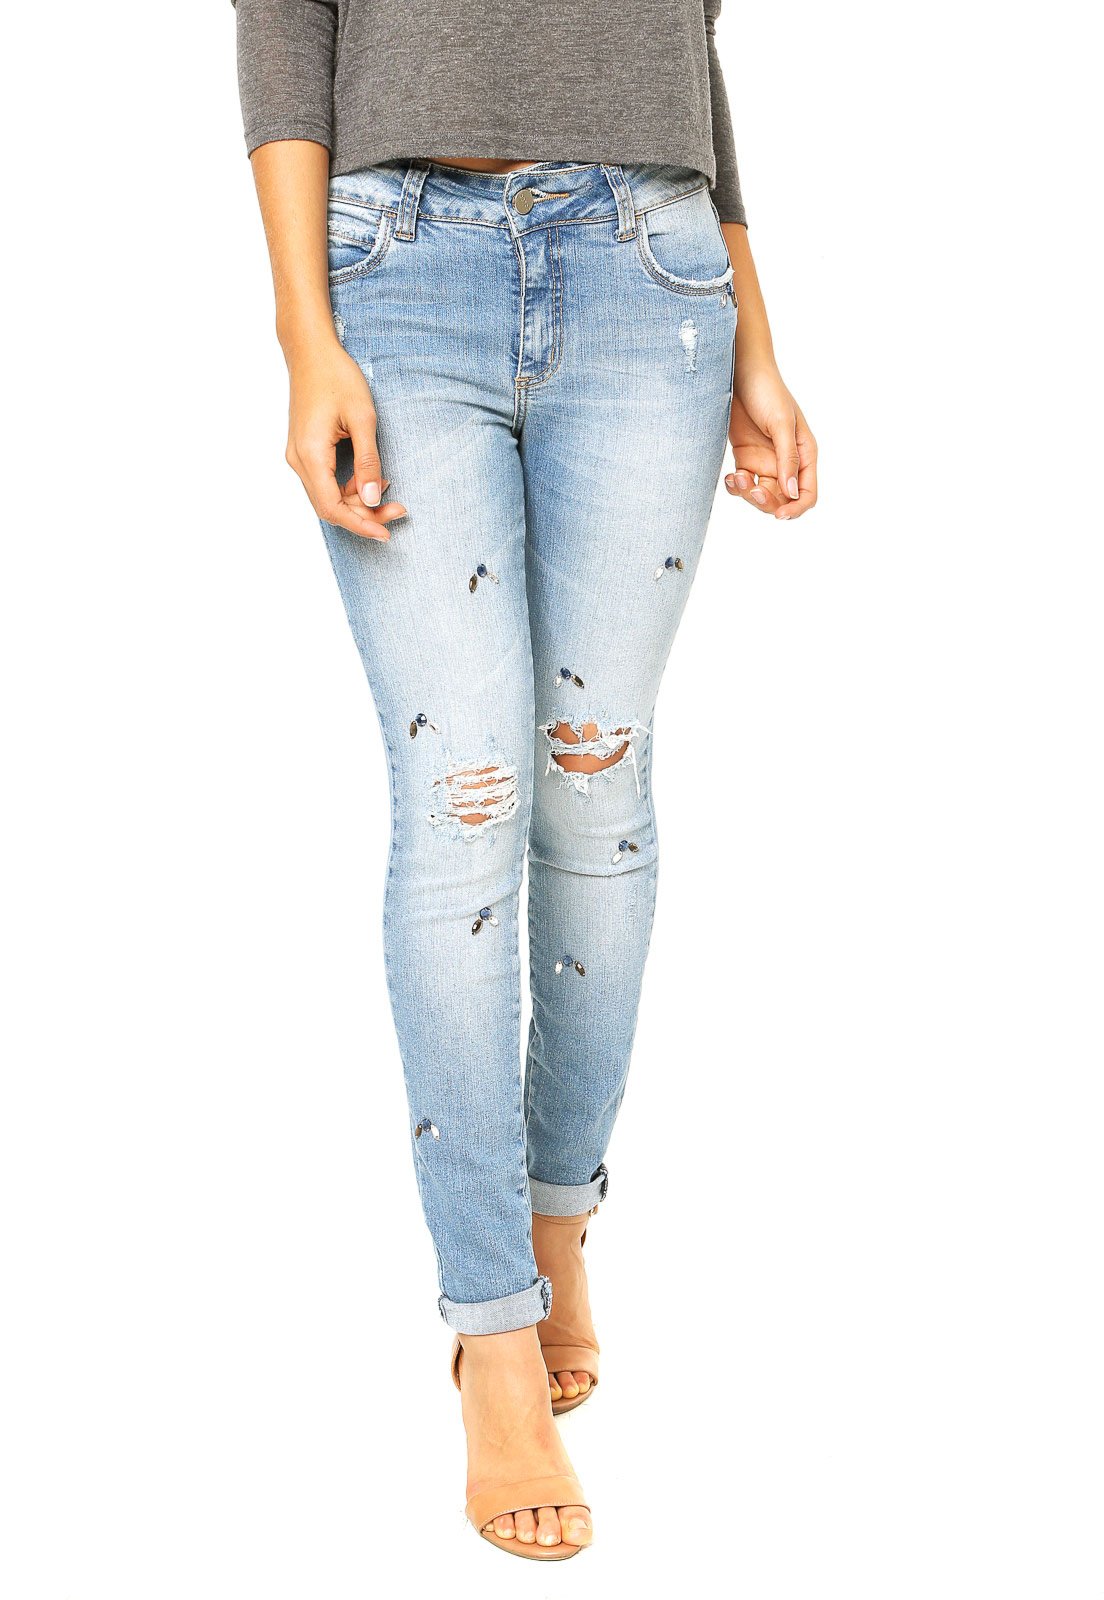 calça jeans feminina com pedrarias